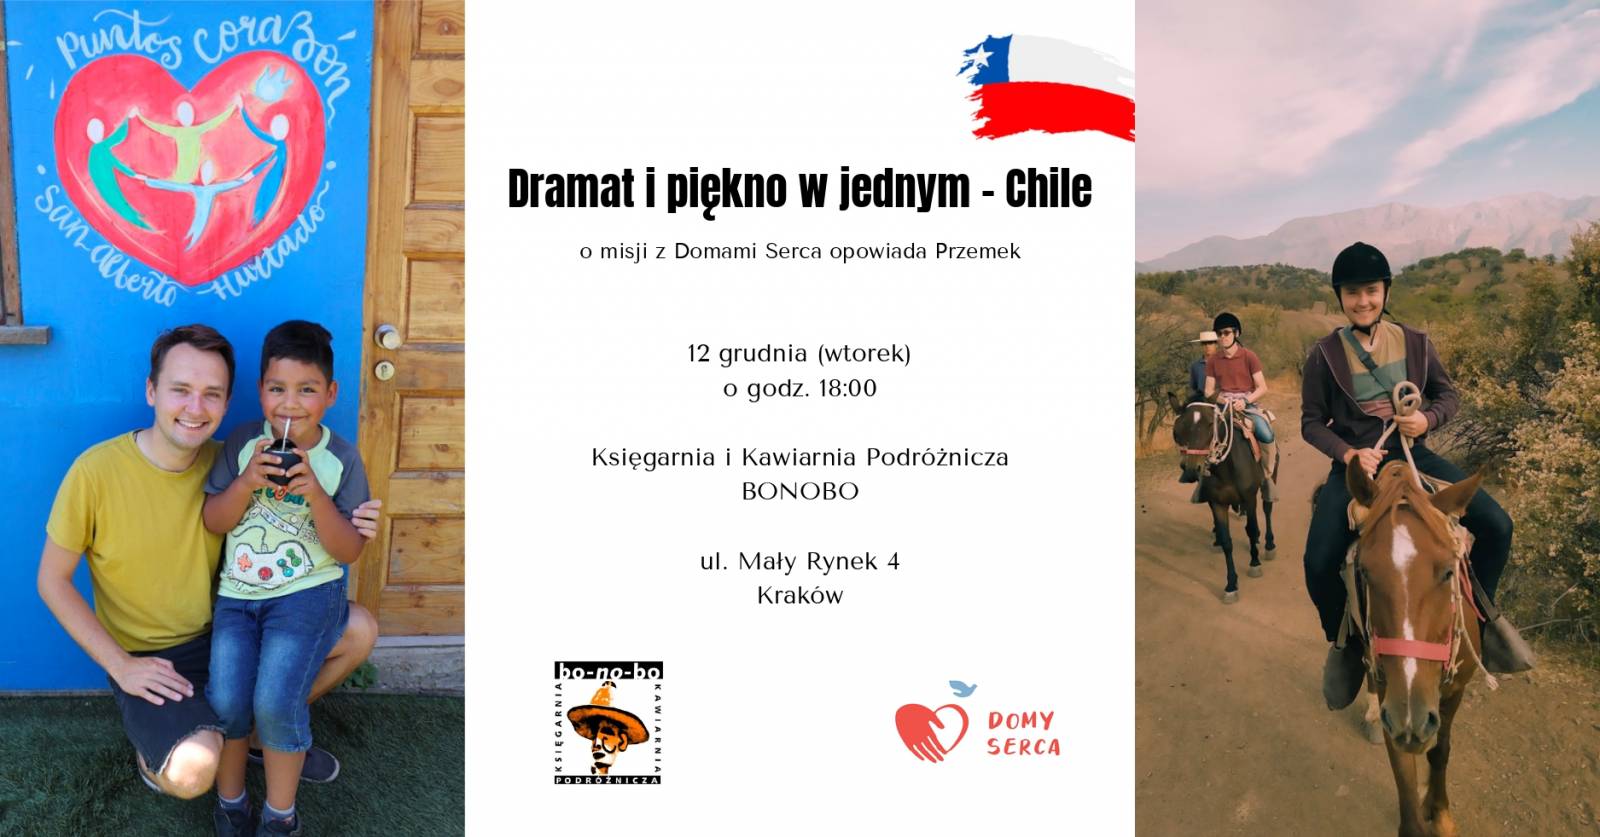 Dramat i piękno w jednym – o misji z Domami Serca w Chile